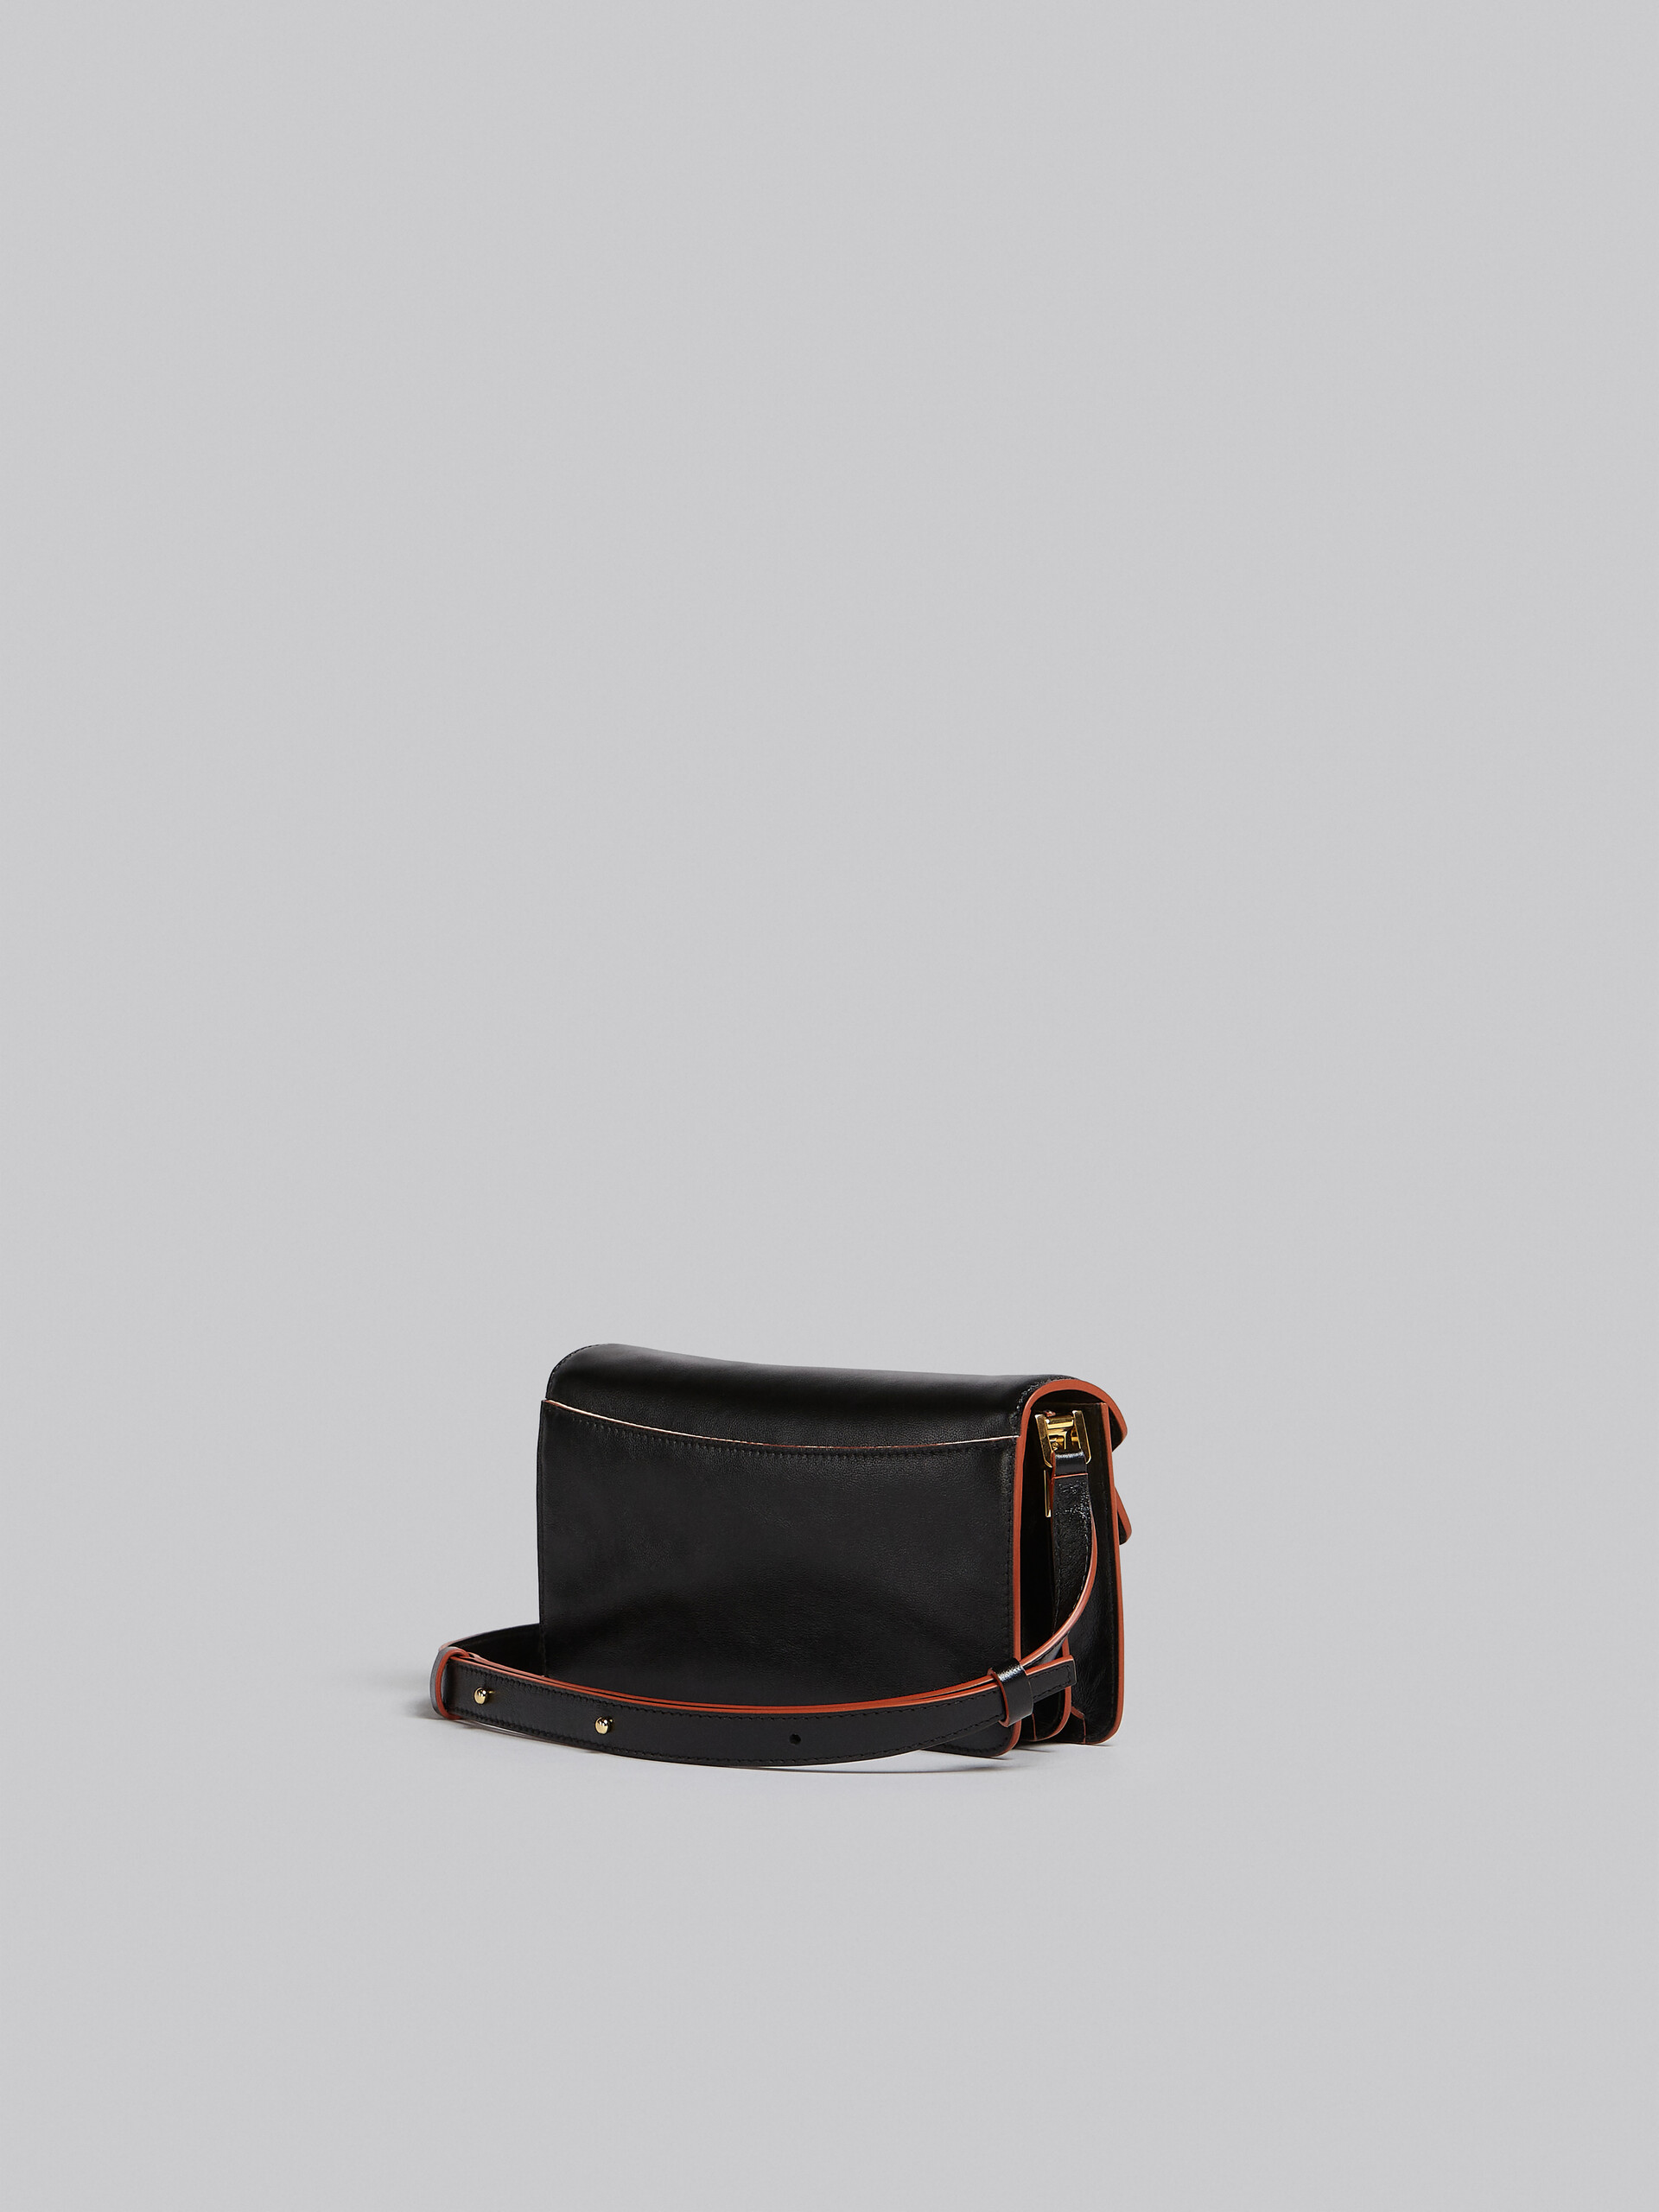 Tasche Trunk Soft aus schwarzem Leder - Schultertaschen - Image 3